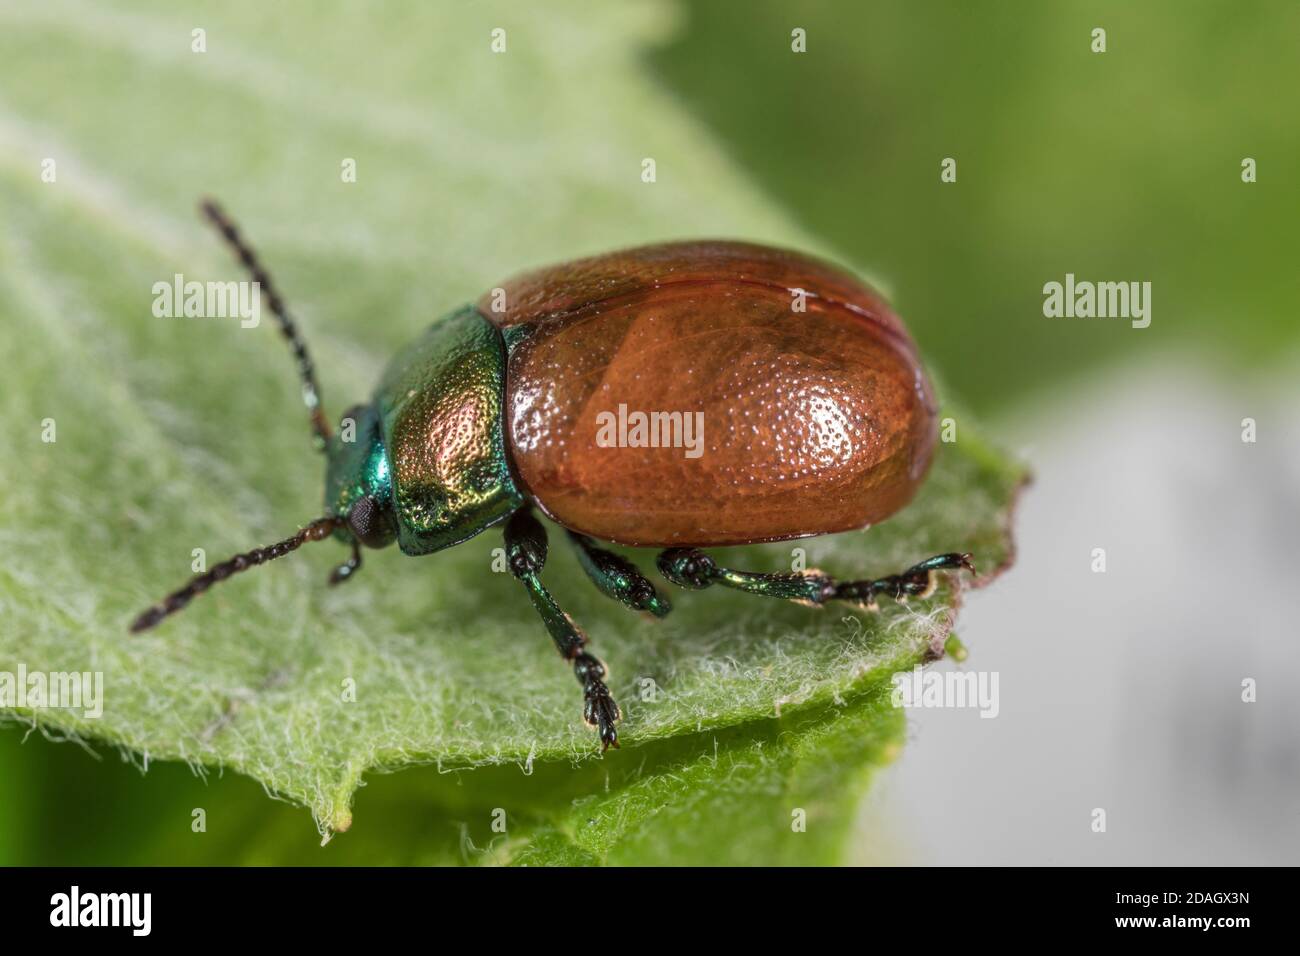 leaf beetle (Chrysolina polita), sits on a leaf, Germany Stock Photo